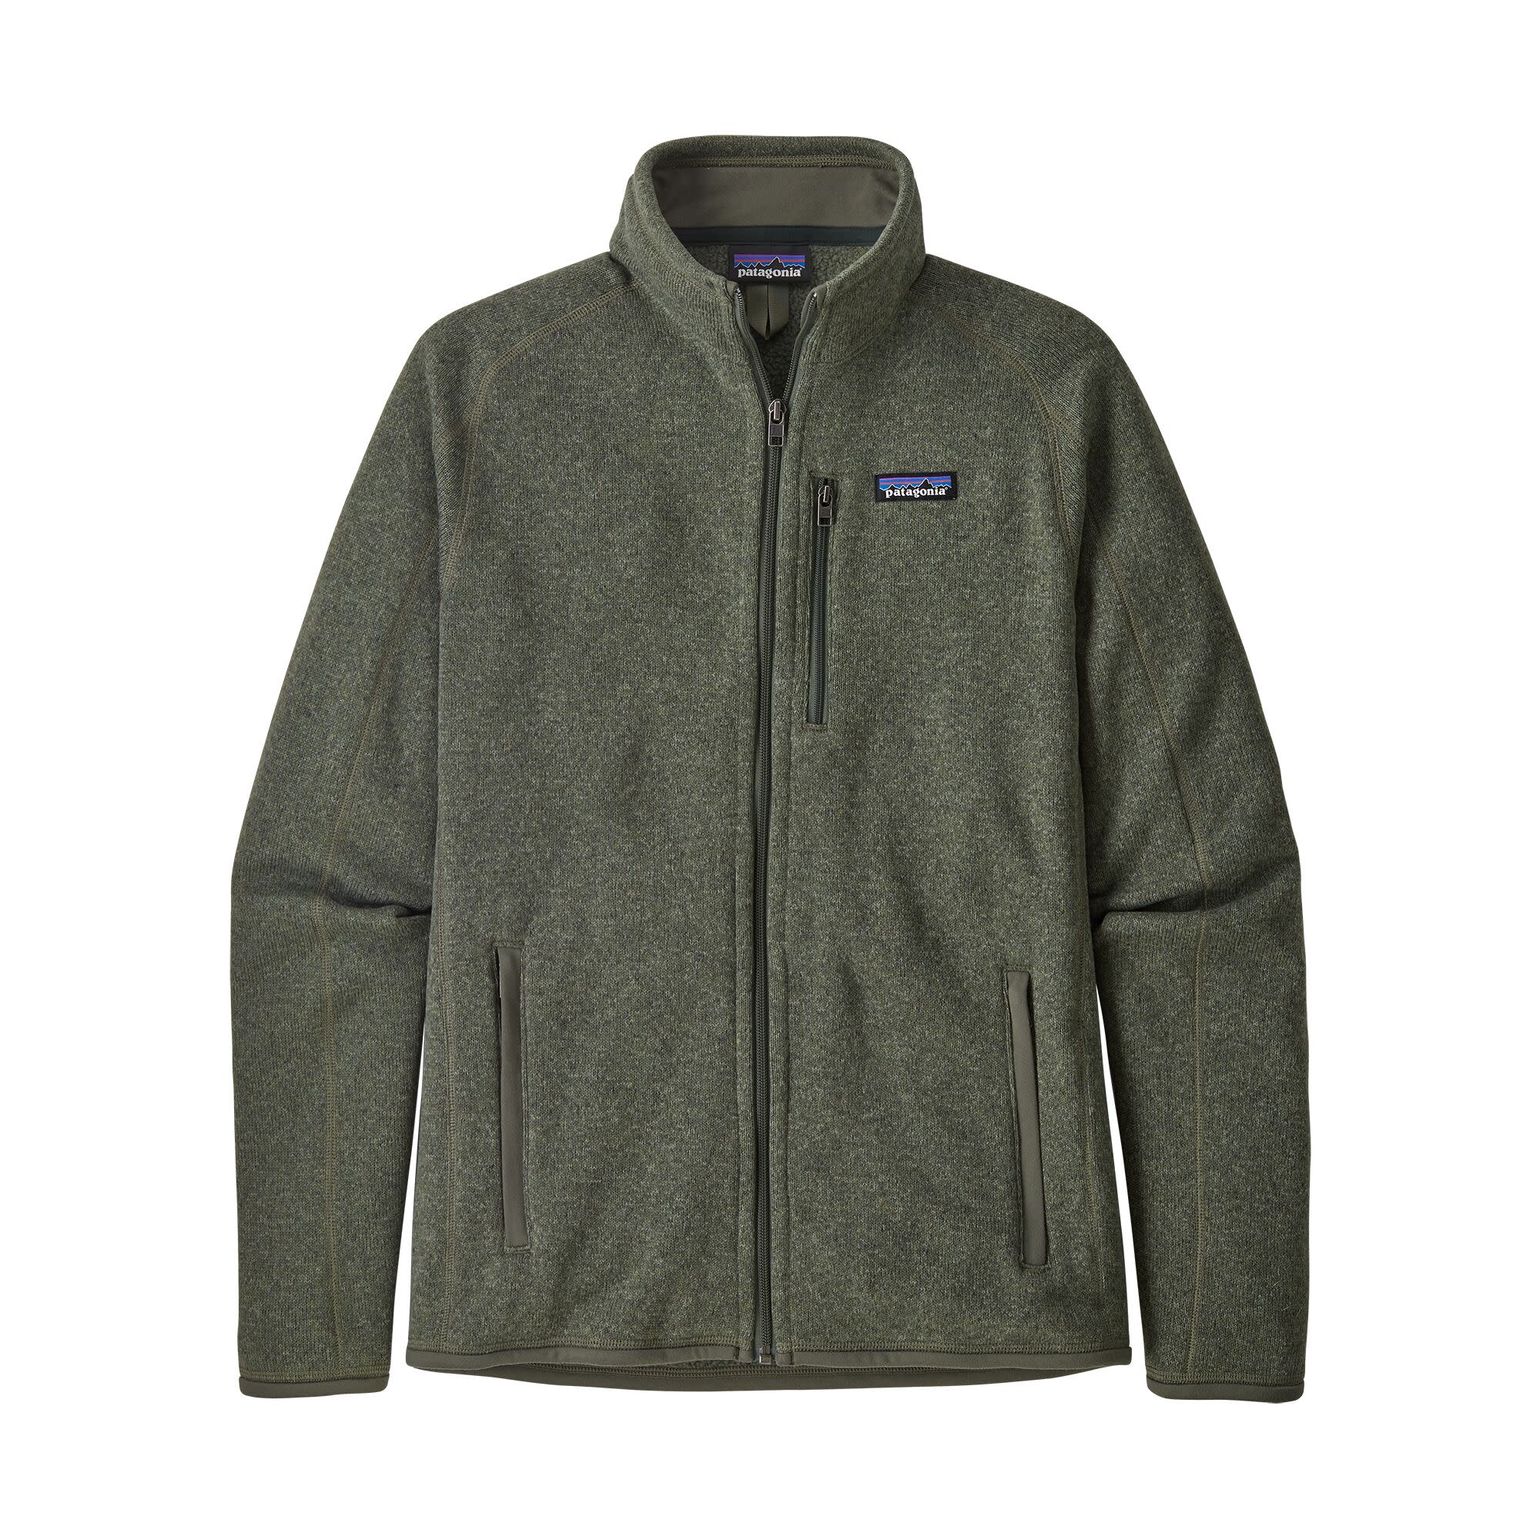 Patagonia Men's Better Sweater Fleece Jacket Industrial Green